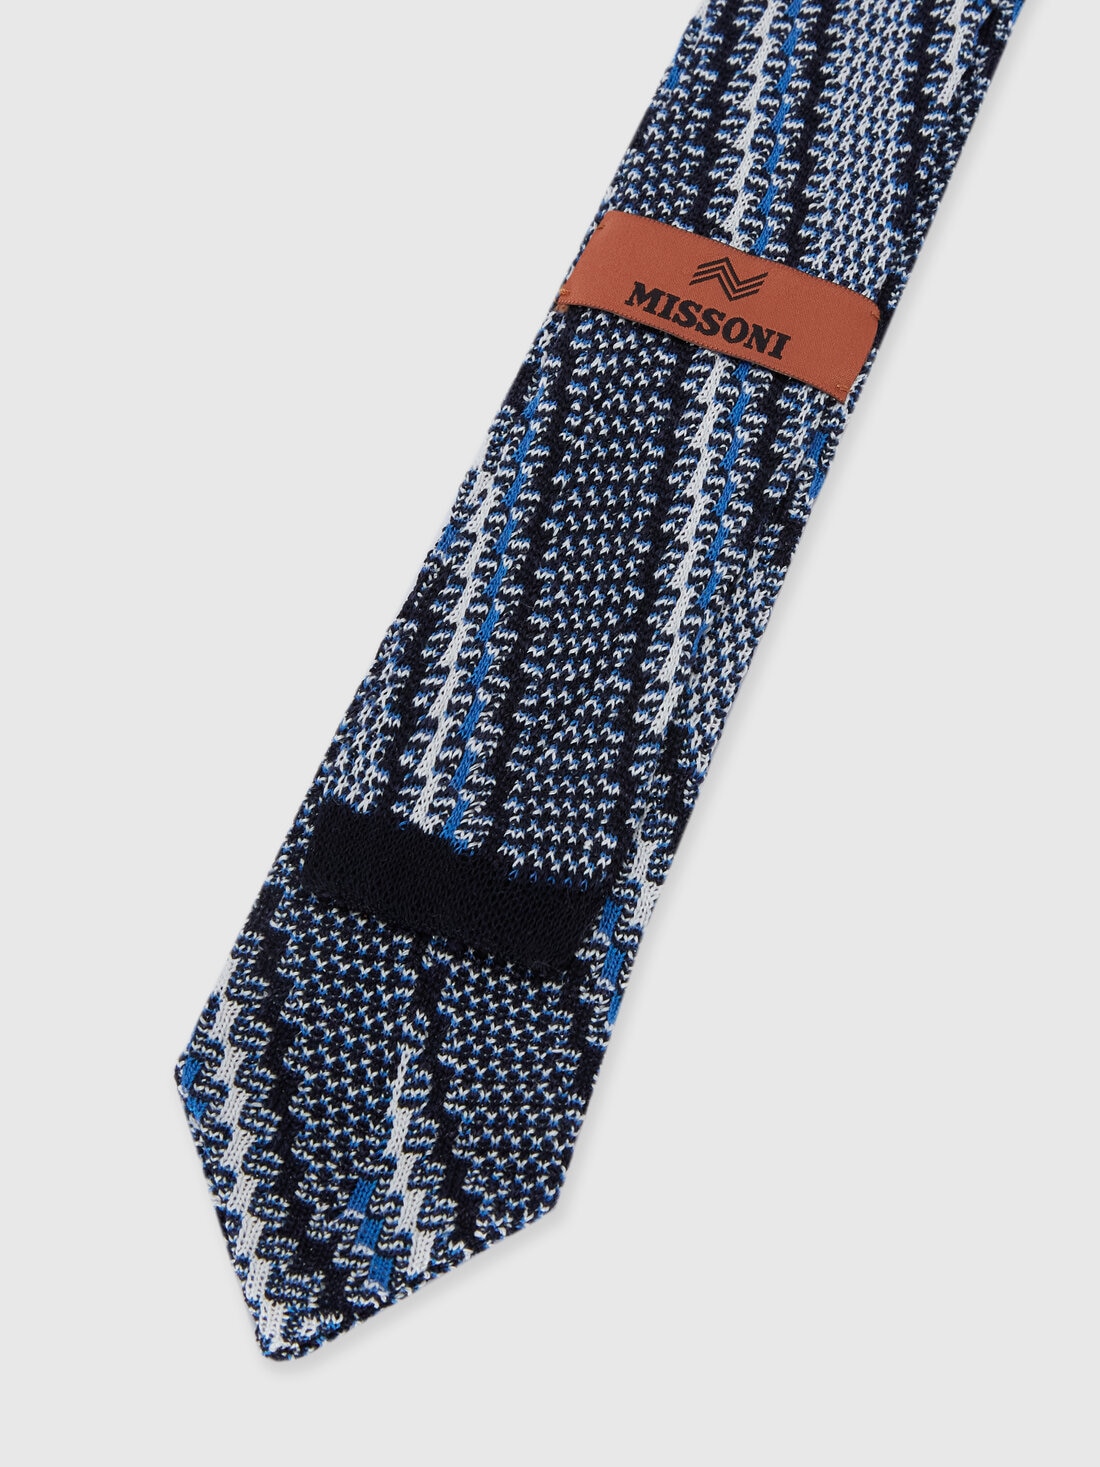 Cravatta in cotone e lino con ricami, Multicolore  - 8053147141879 - 2